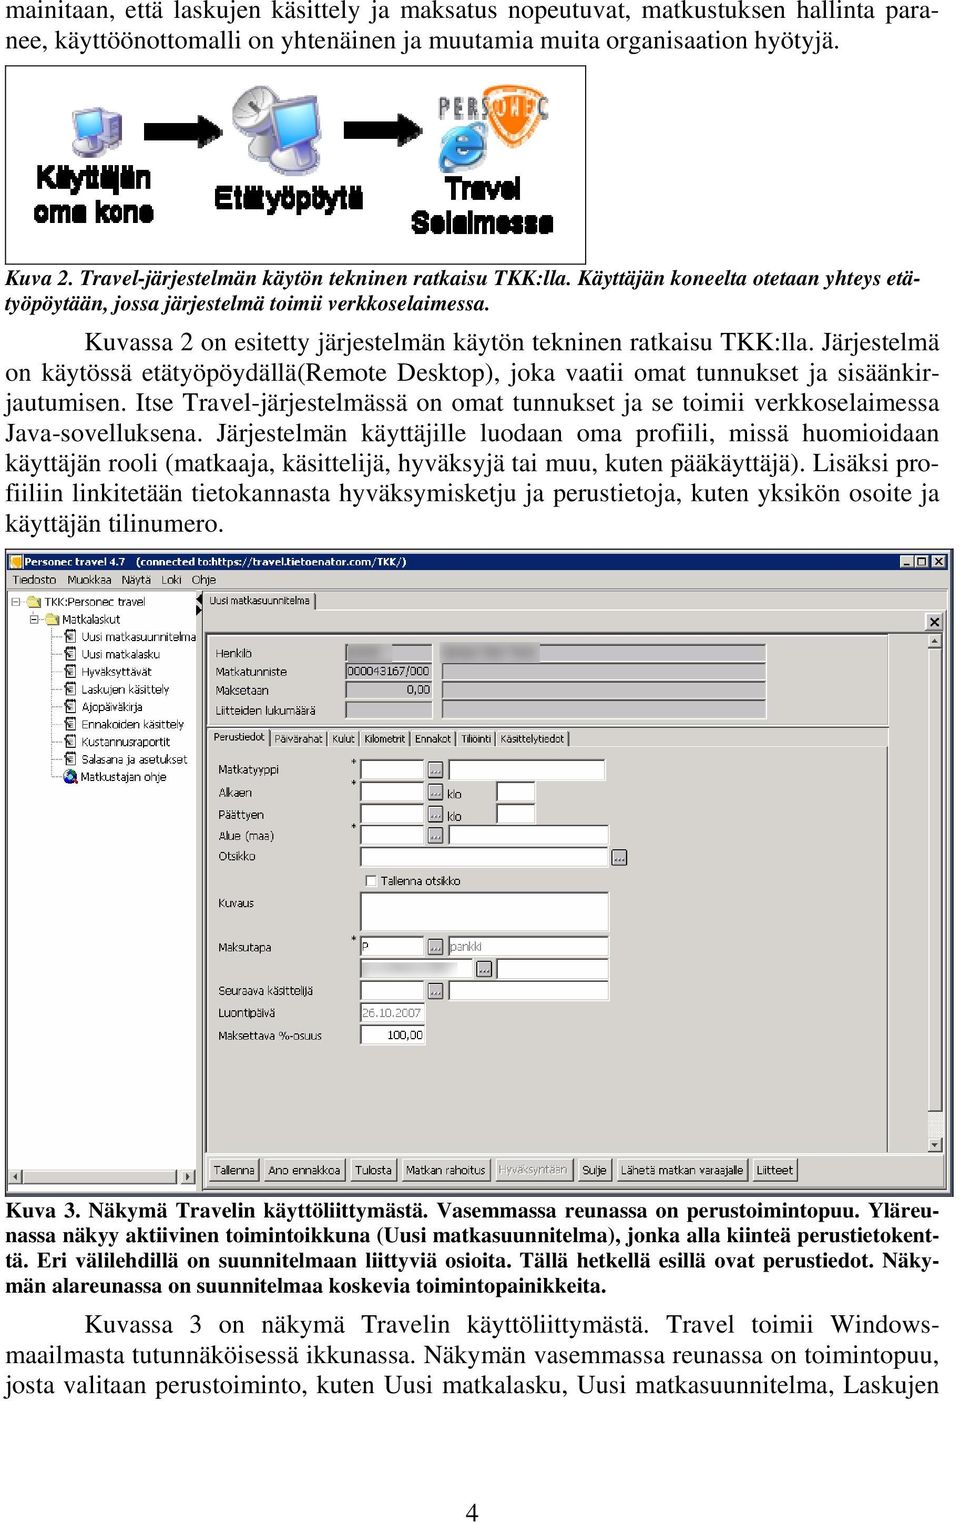 Kuvassa 2 on esitetty järjestelmän käytön tekninen ratkaisu TKK:lla. Järjestelmä on käytössä etätyöpöydällä(remote Desktop), joka vaatii omat tunnukset ja sisäänkirjautumisen.